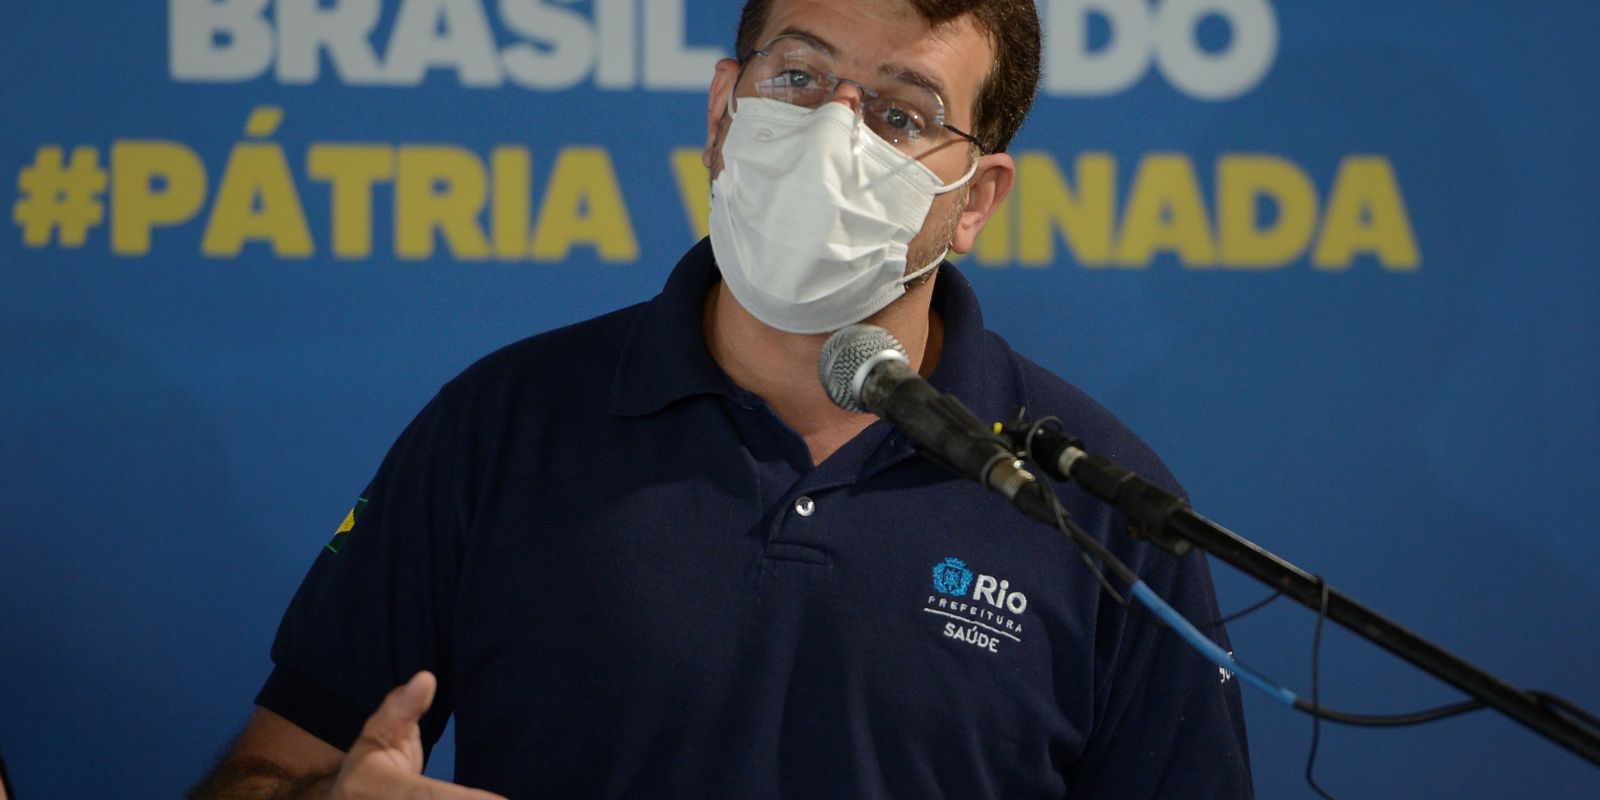 20/11/2021 - O secretário municipal de Saúde do Rio de Janeiro, Daniel Soranz fala durante evento Megavacinação Contra a Covid-19, na Cidade das Artes, no Rio de Janeiro